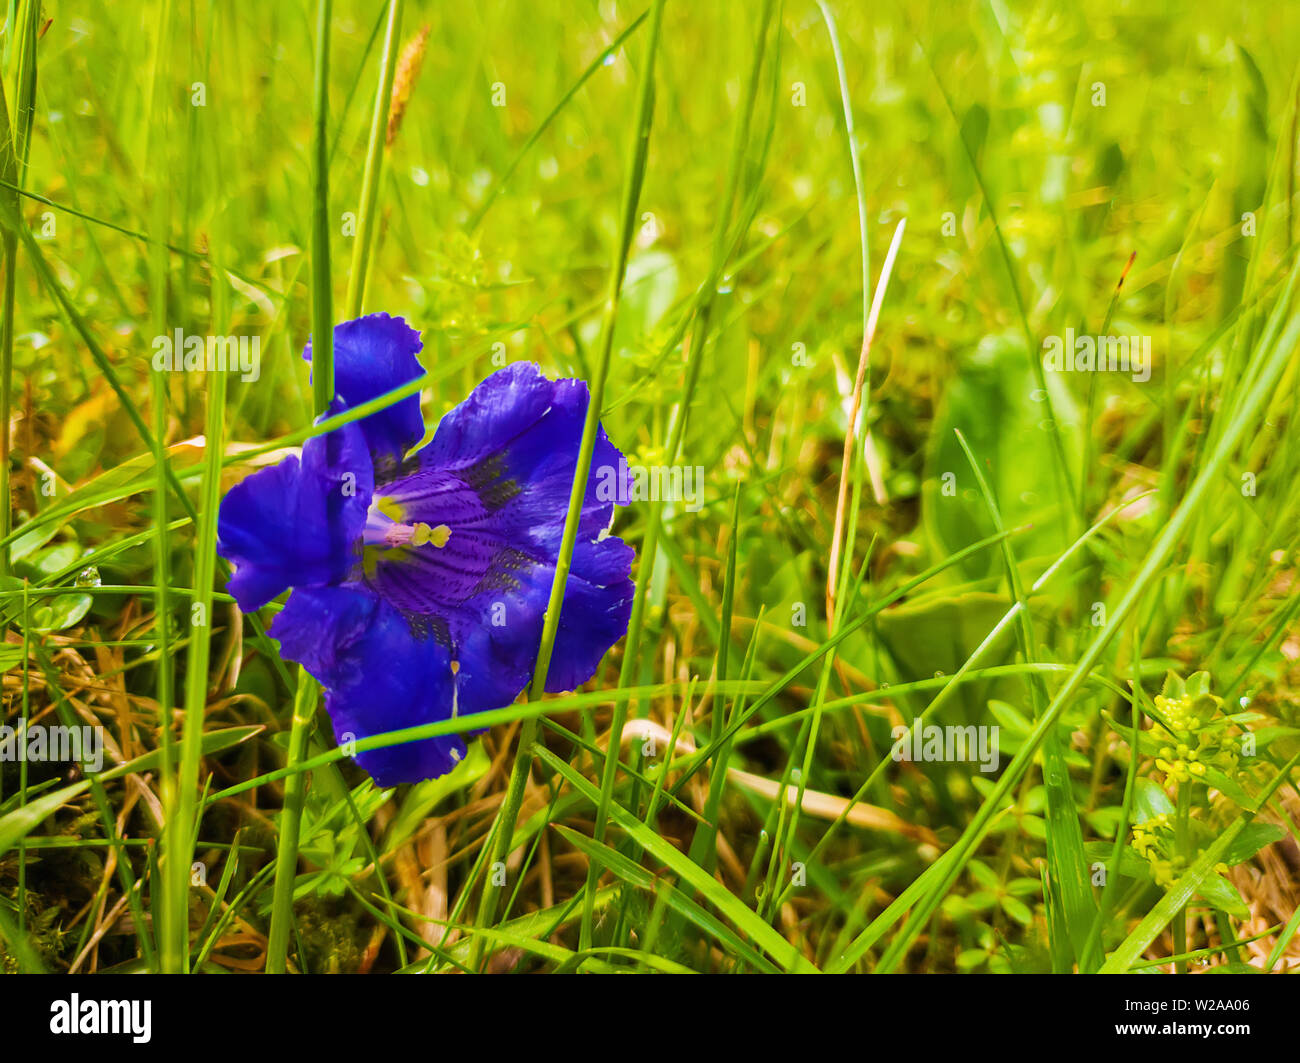 Nahaufnahme von einzelne blaue Blume Enzian (Gentiana acaulis) im grünen Gras der Karpaten wilden Hügel. Für den Frühling und Vegetation. Stockfoto